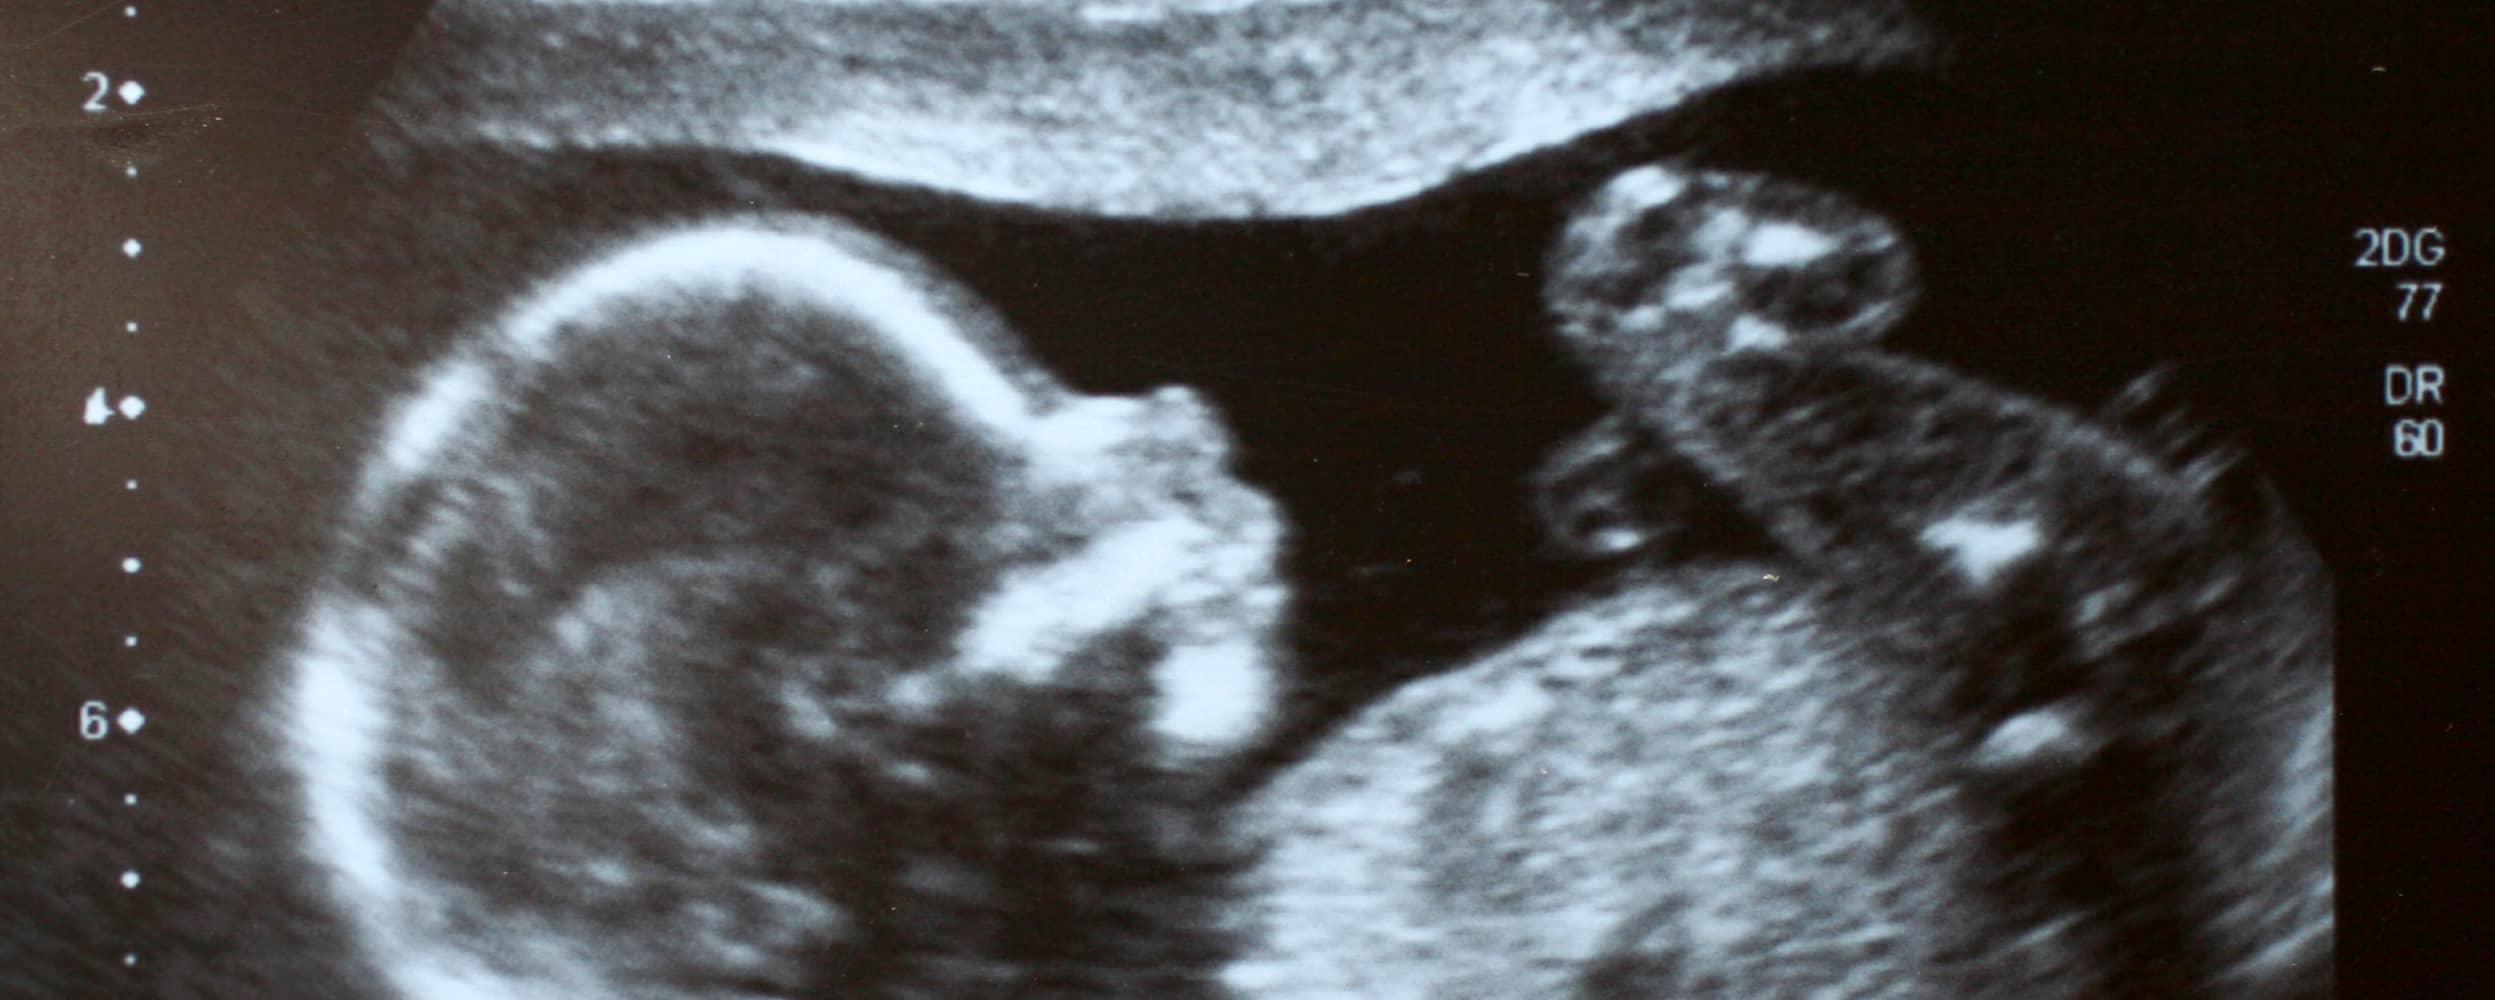 Gastrosquisis fetal: diagnóstico prenatal